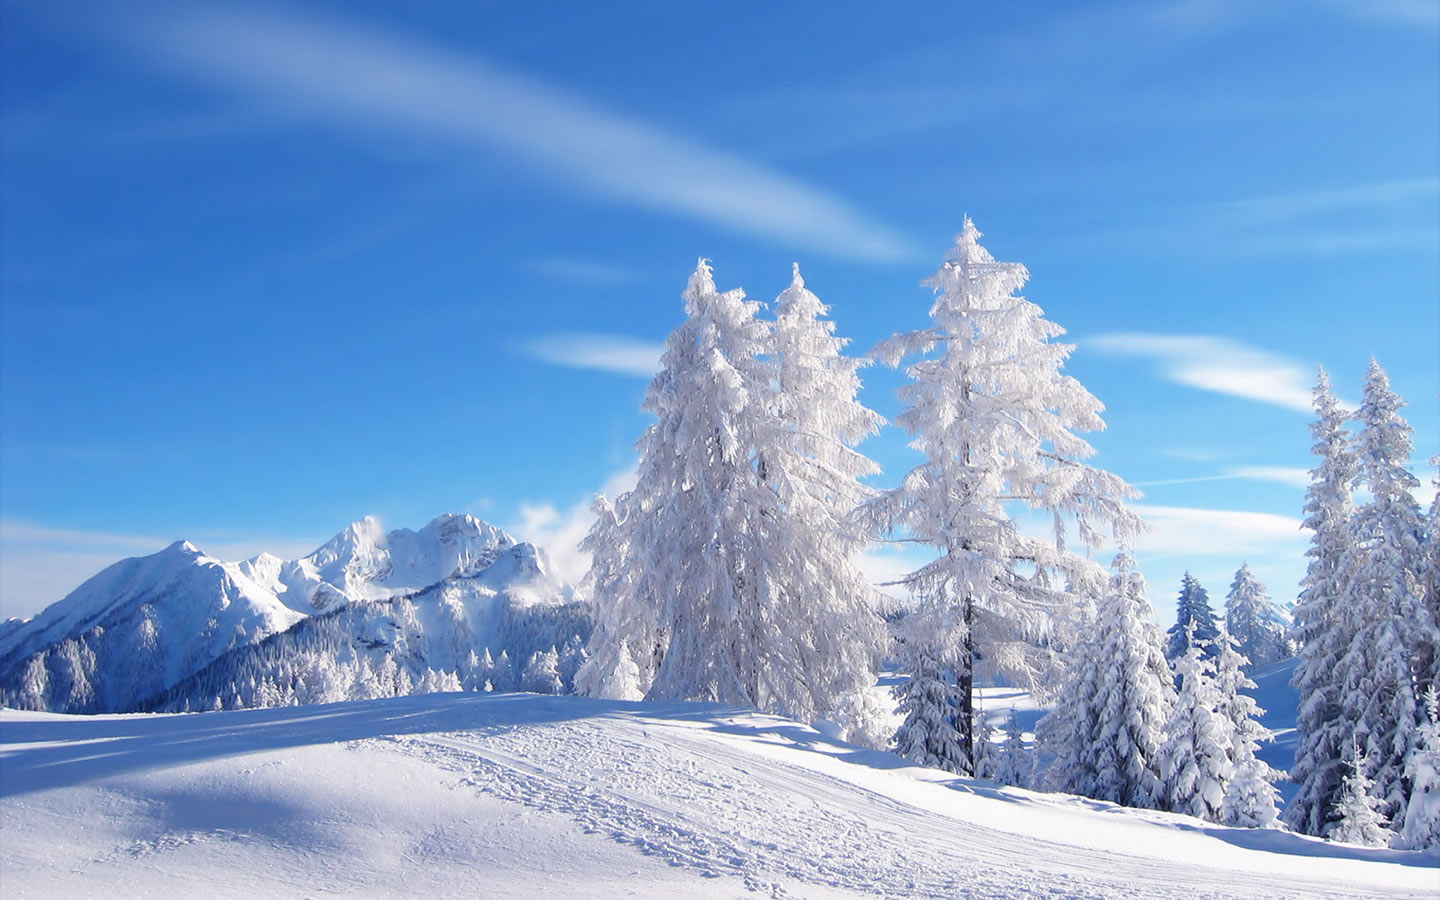 雪松挺拔漂亮雪山景色 蓝天下的漂亮雪景ps背景素材图片